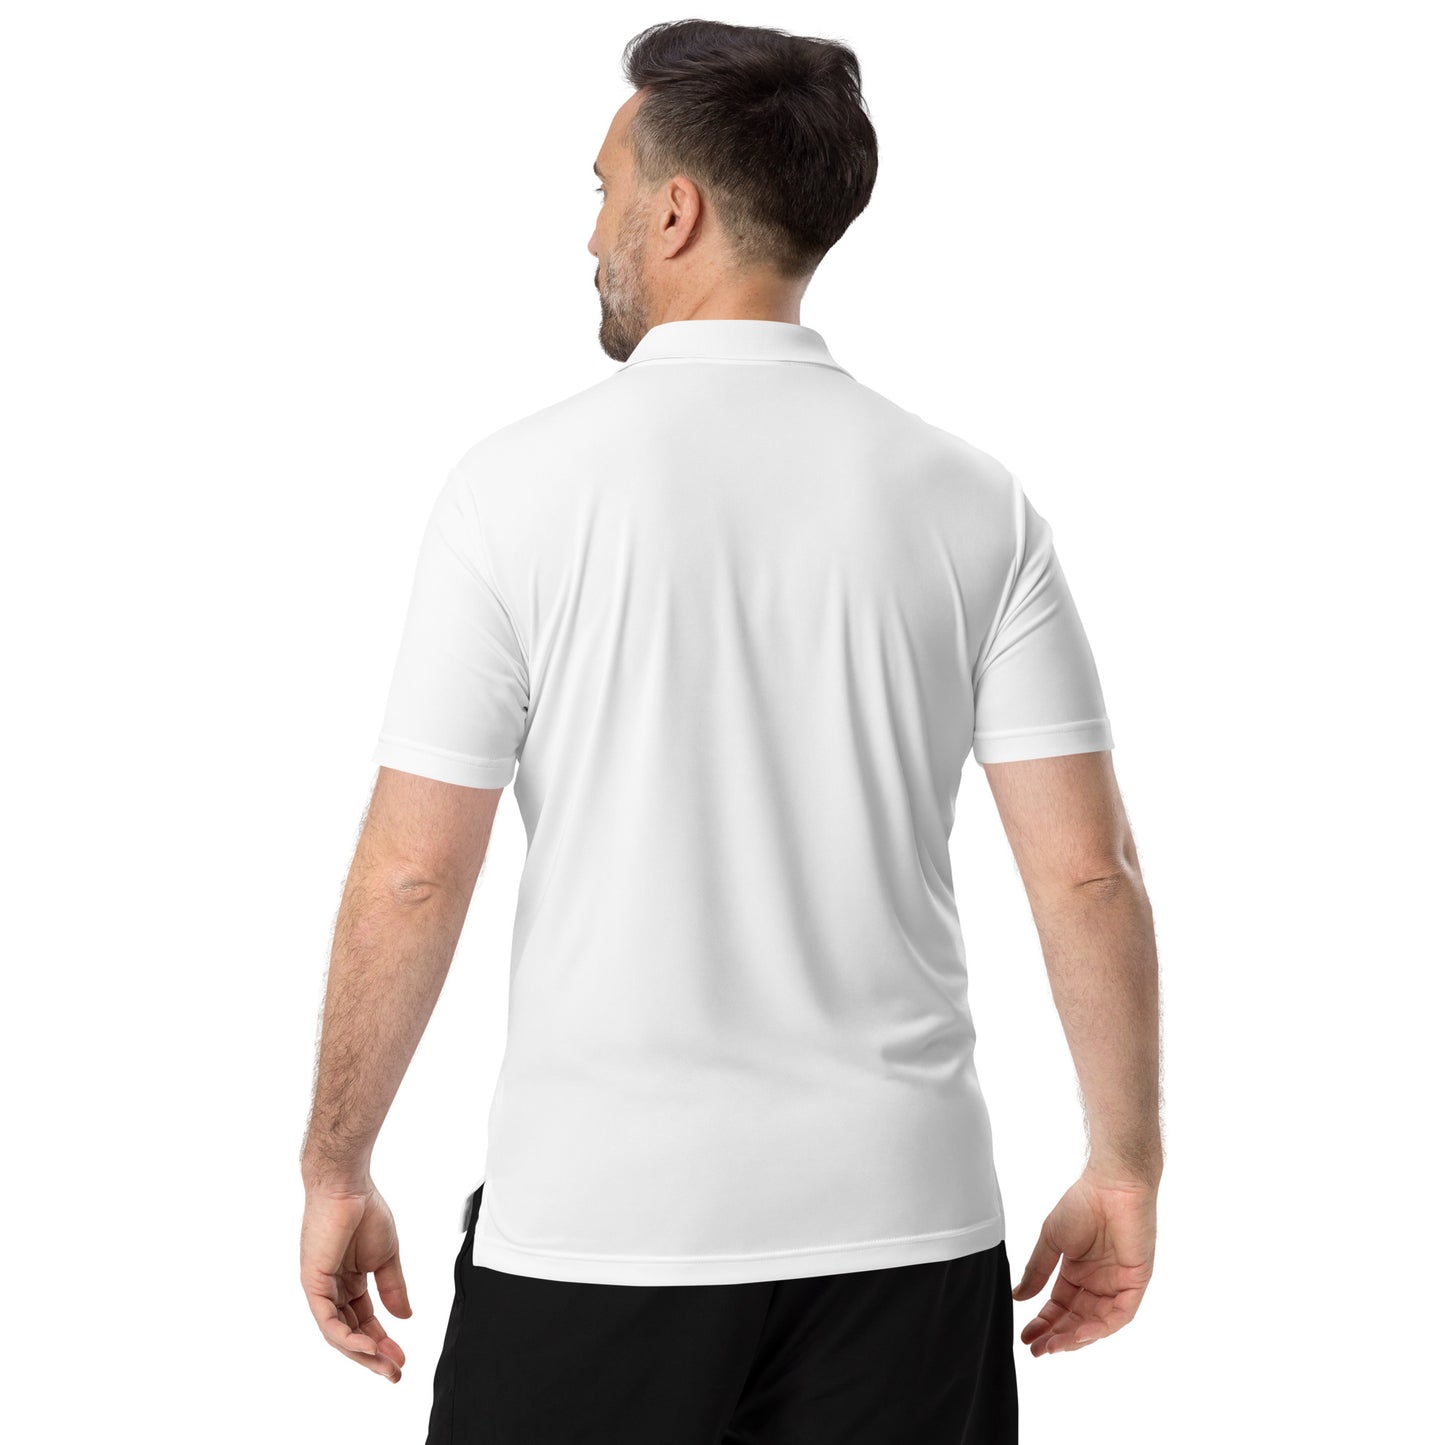 Covfefe Adidas Performance Polo Shirt